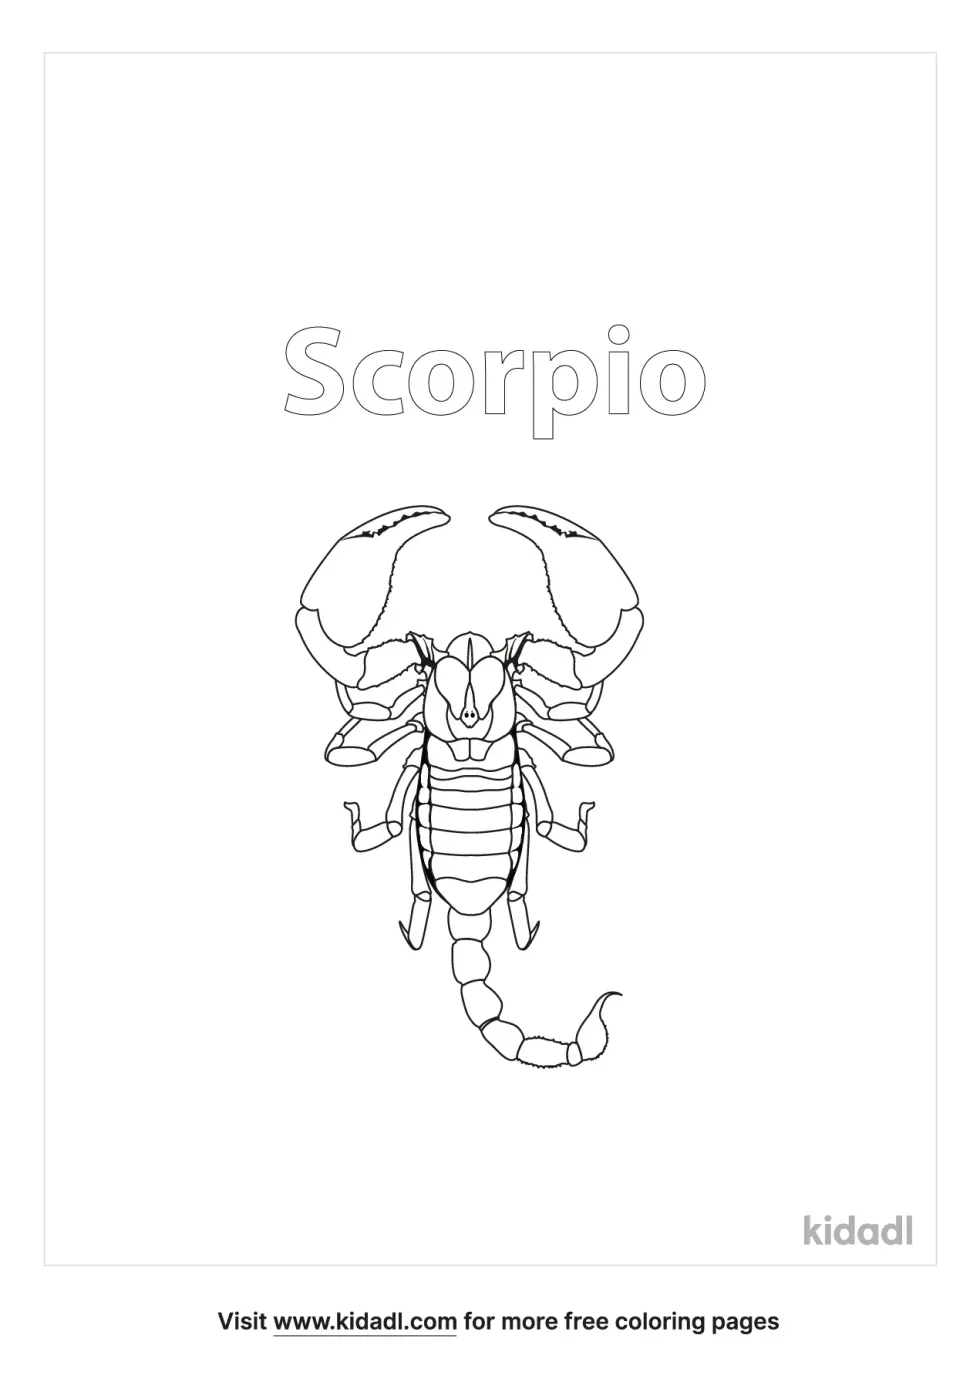 Scorpio